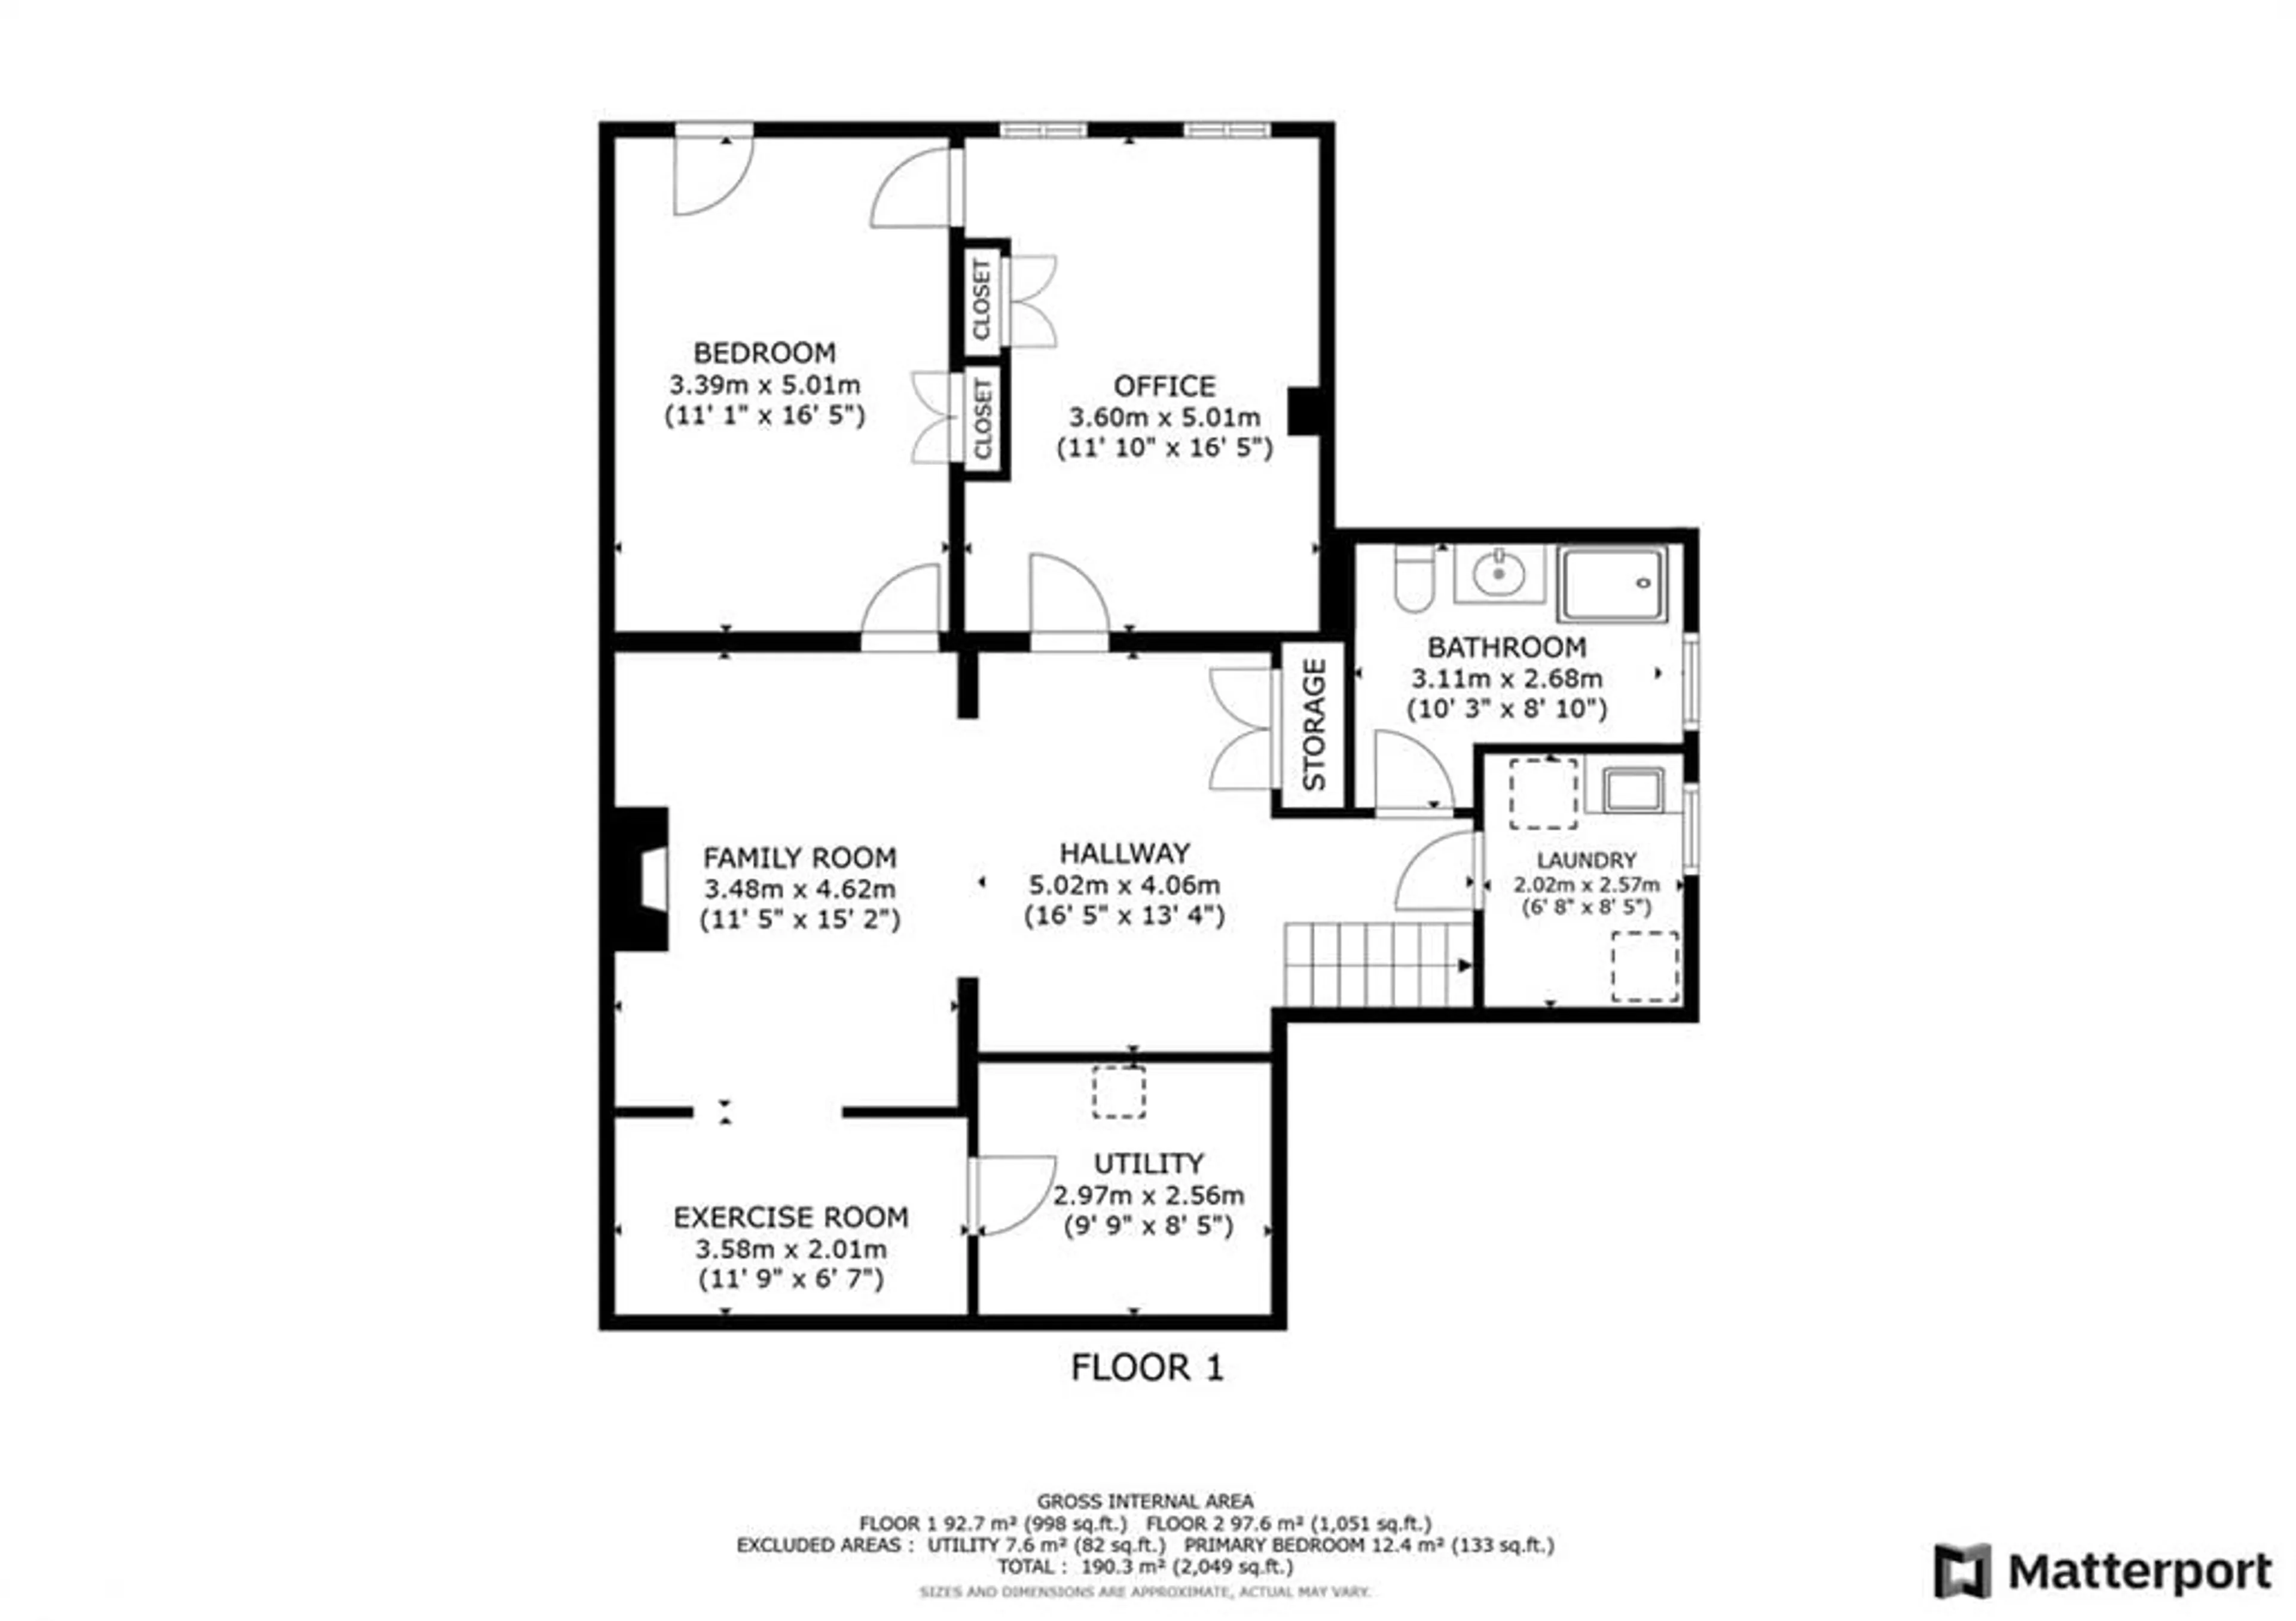 Floor plan for 71 Letitia St, Barrie Ontario L4N 1P2